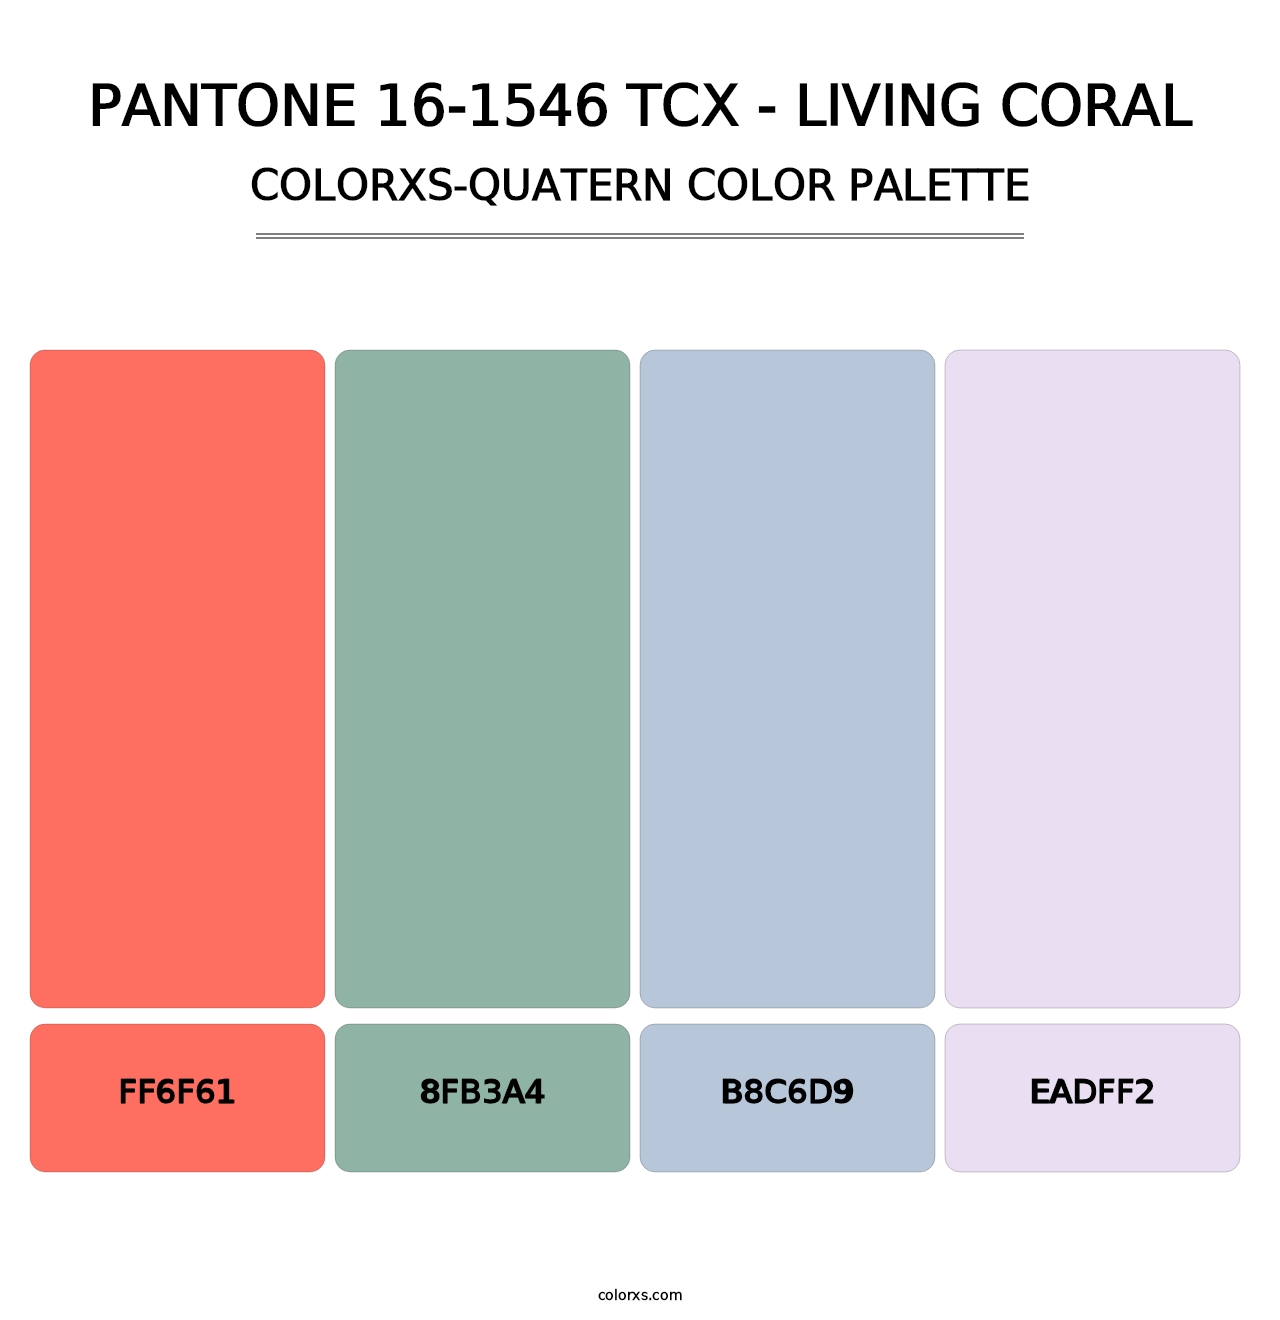 PANTONE 16-1546 TCX - Living Coral - Colorxs Quatern Palette